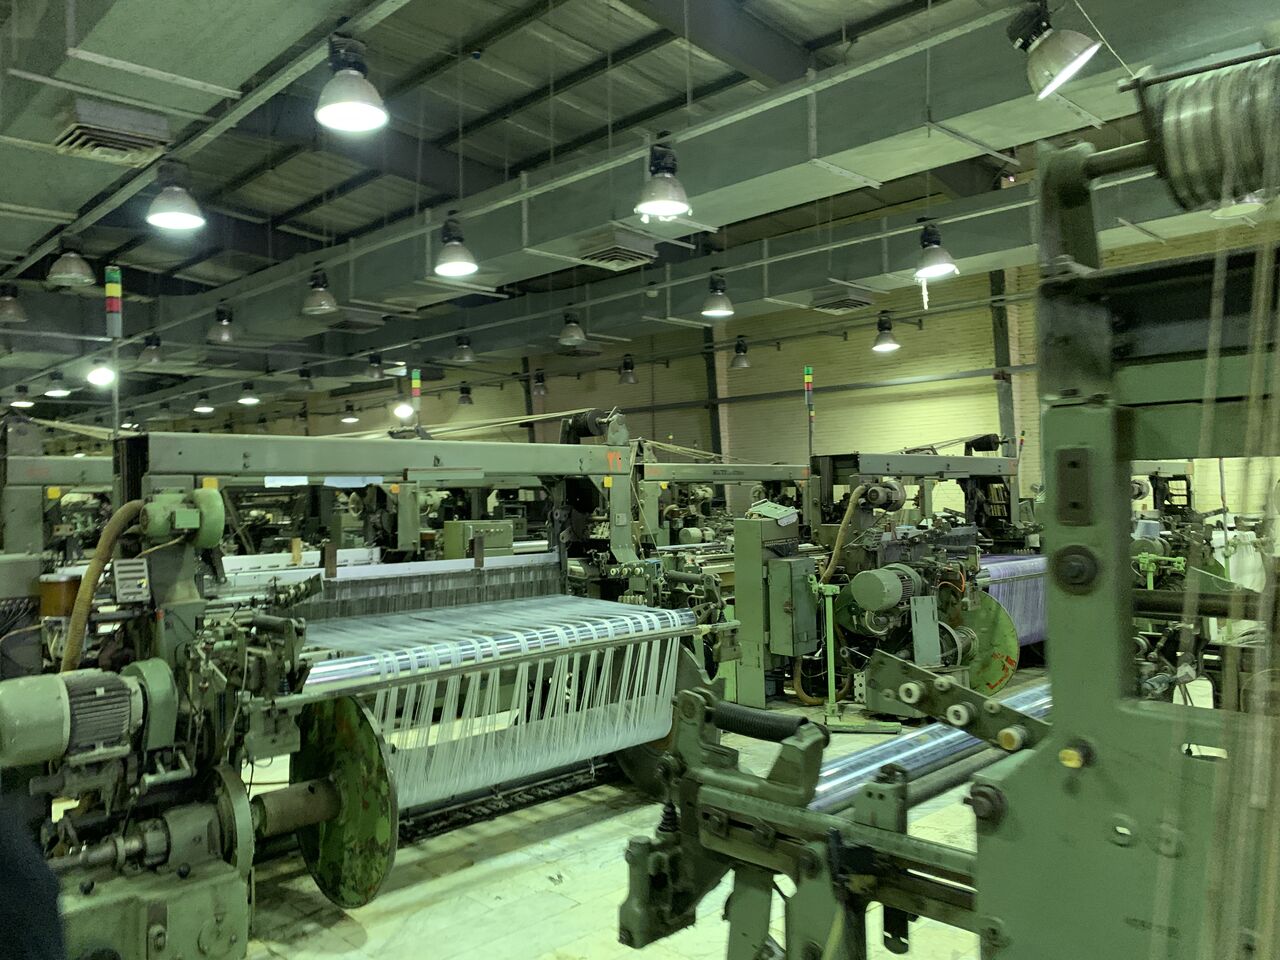  ۹۳ طرح تولیدی صنعتی در سلماس اجرایی شده است